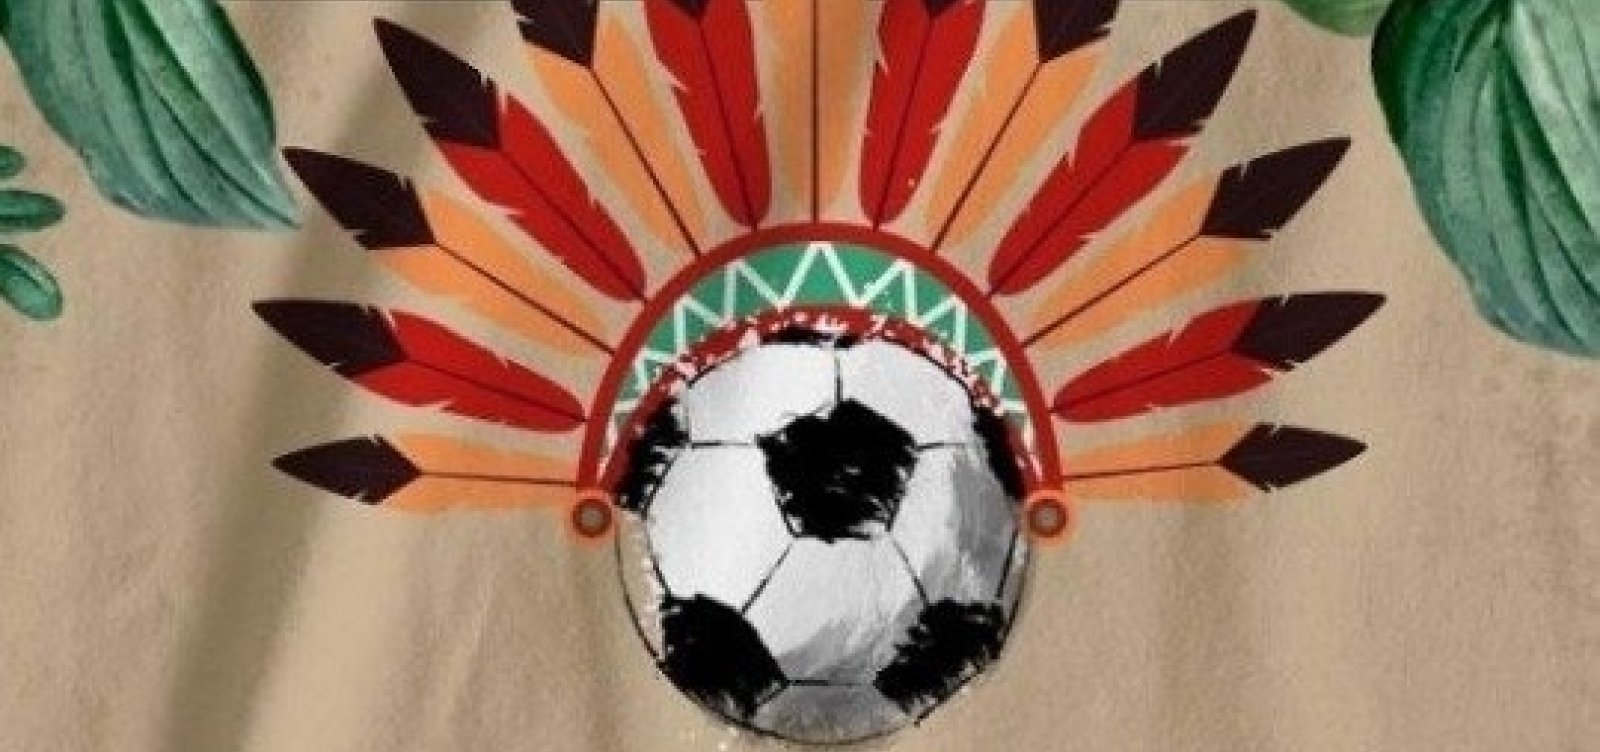 Bahia receberá primeira Copa Indígena de Futebol